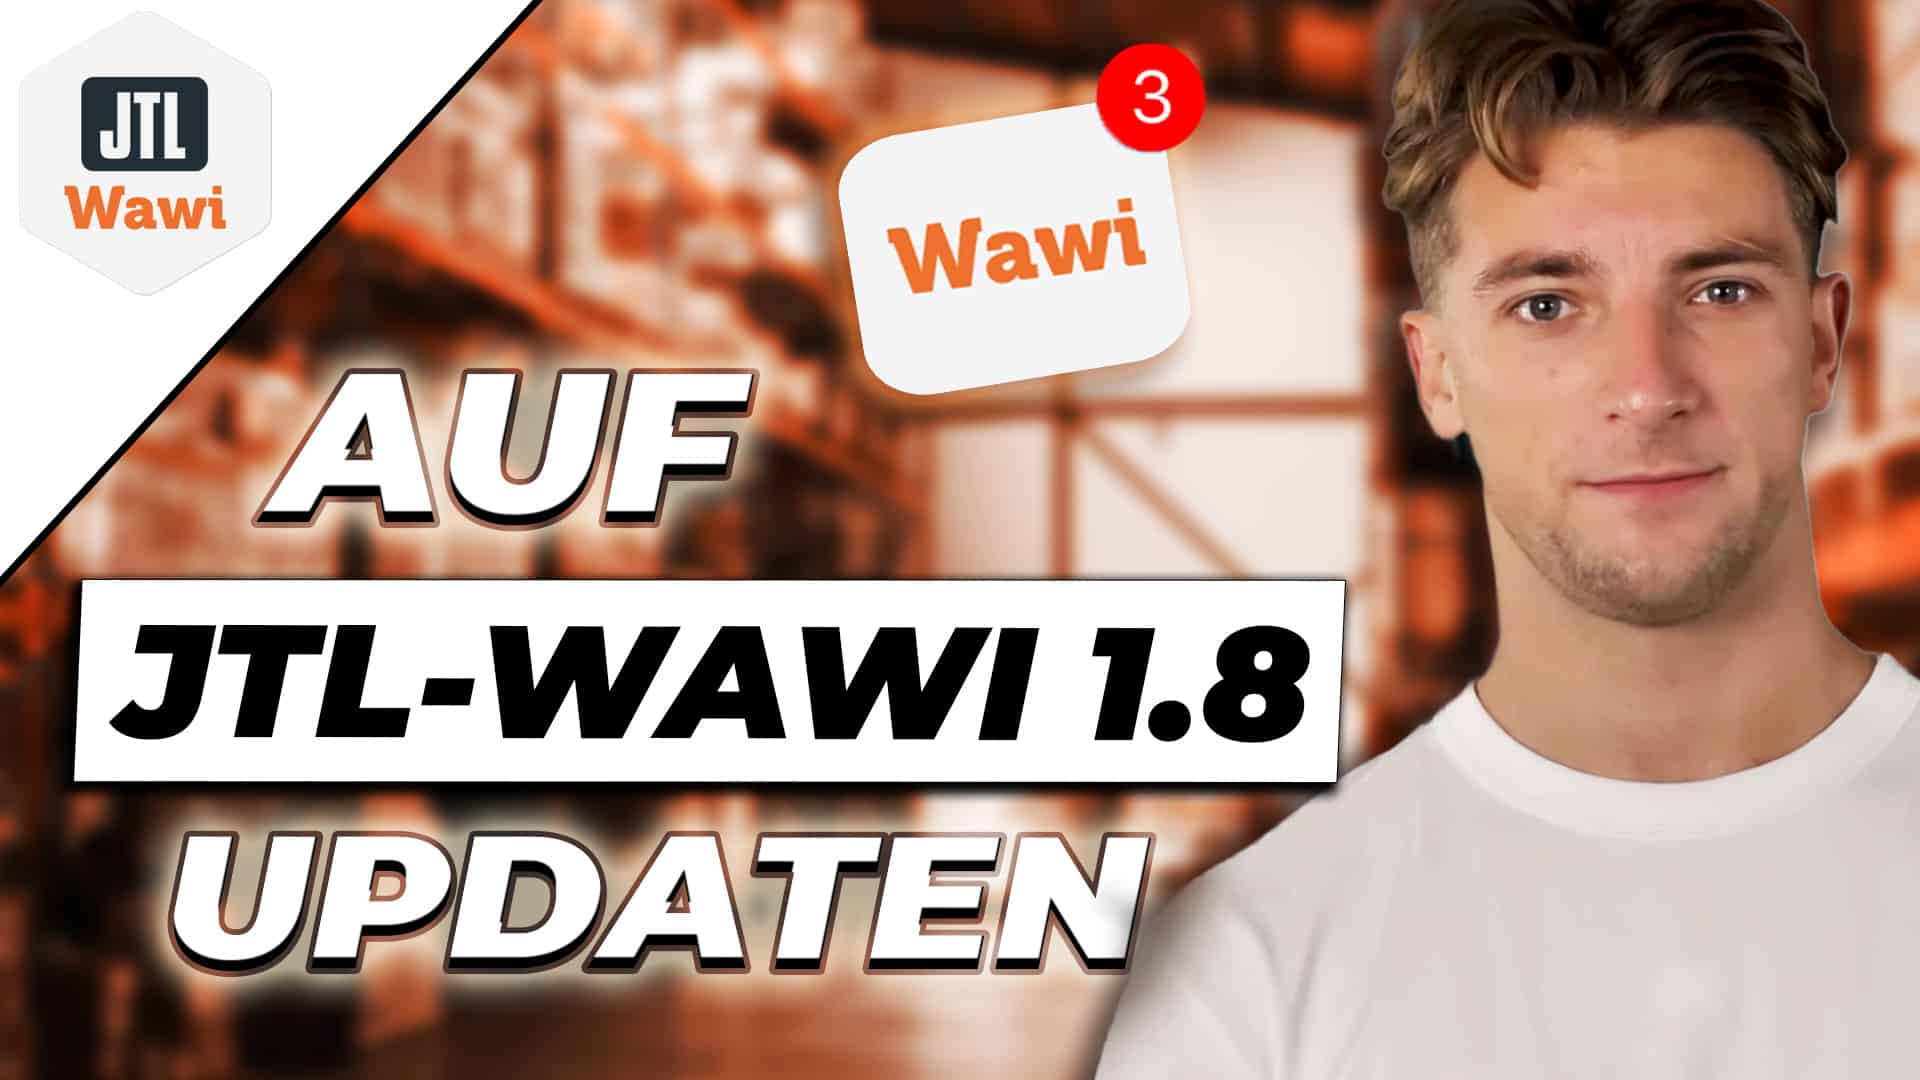 Auf JTL-Wawi 1.8 Updaten – Wir zeigen wie es geht